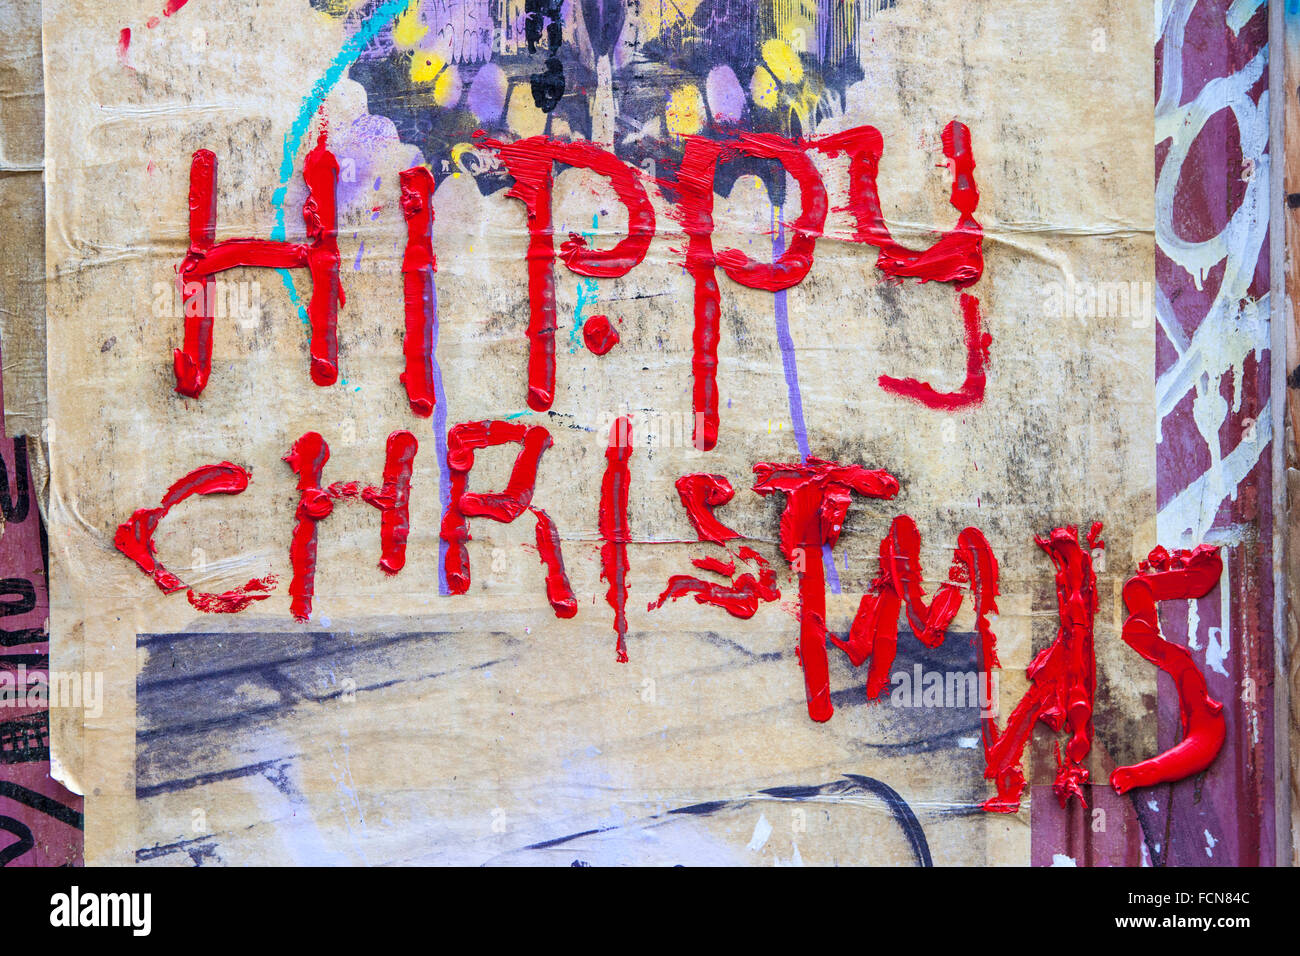 Londres, Royaume-Uni - 13 janvier 2016 : Noël hippie peint sur un mur urbain à Londres, le 13 janvier 2016. Banque D'Images